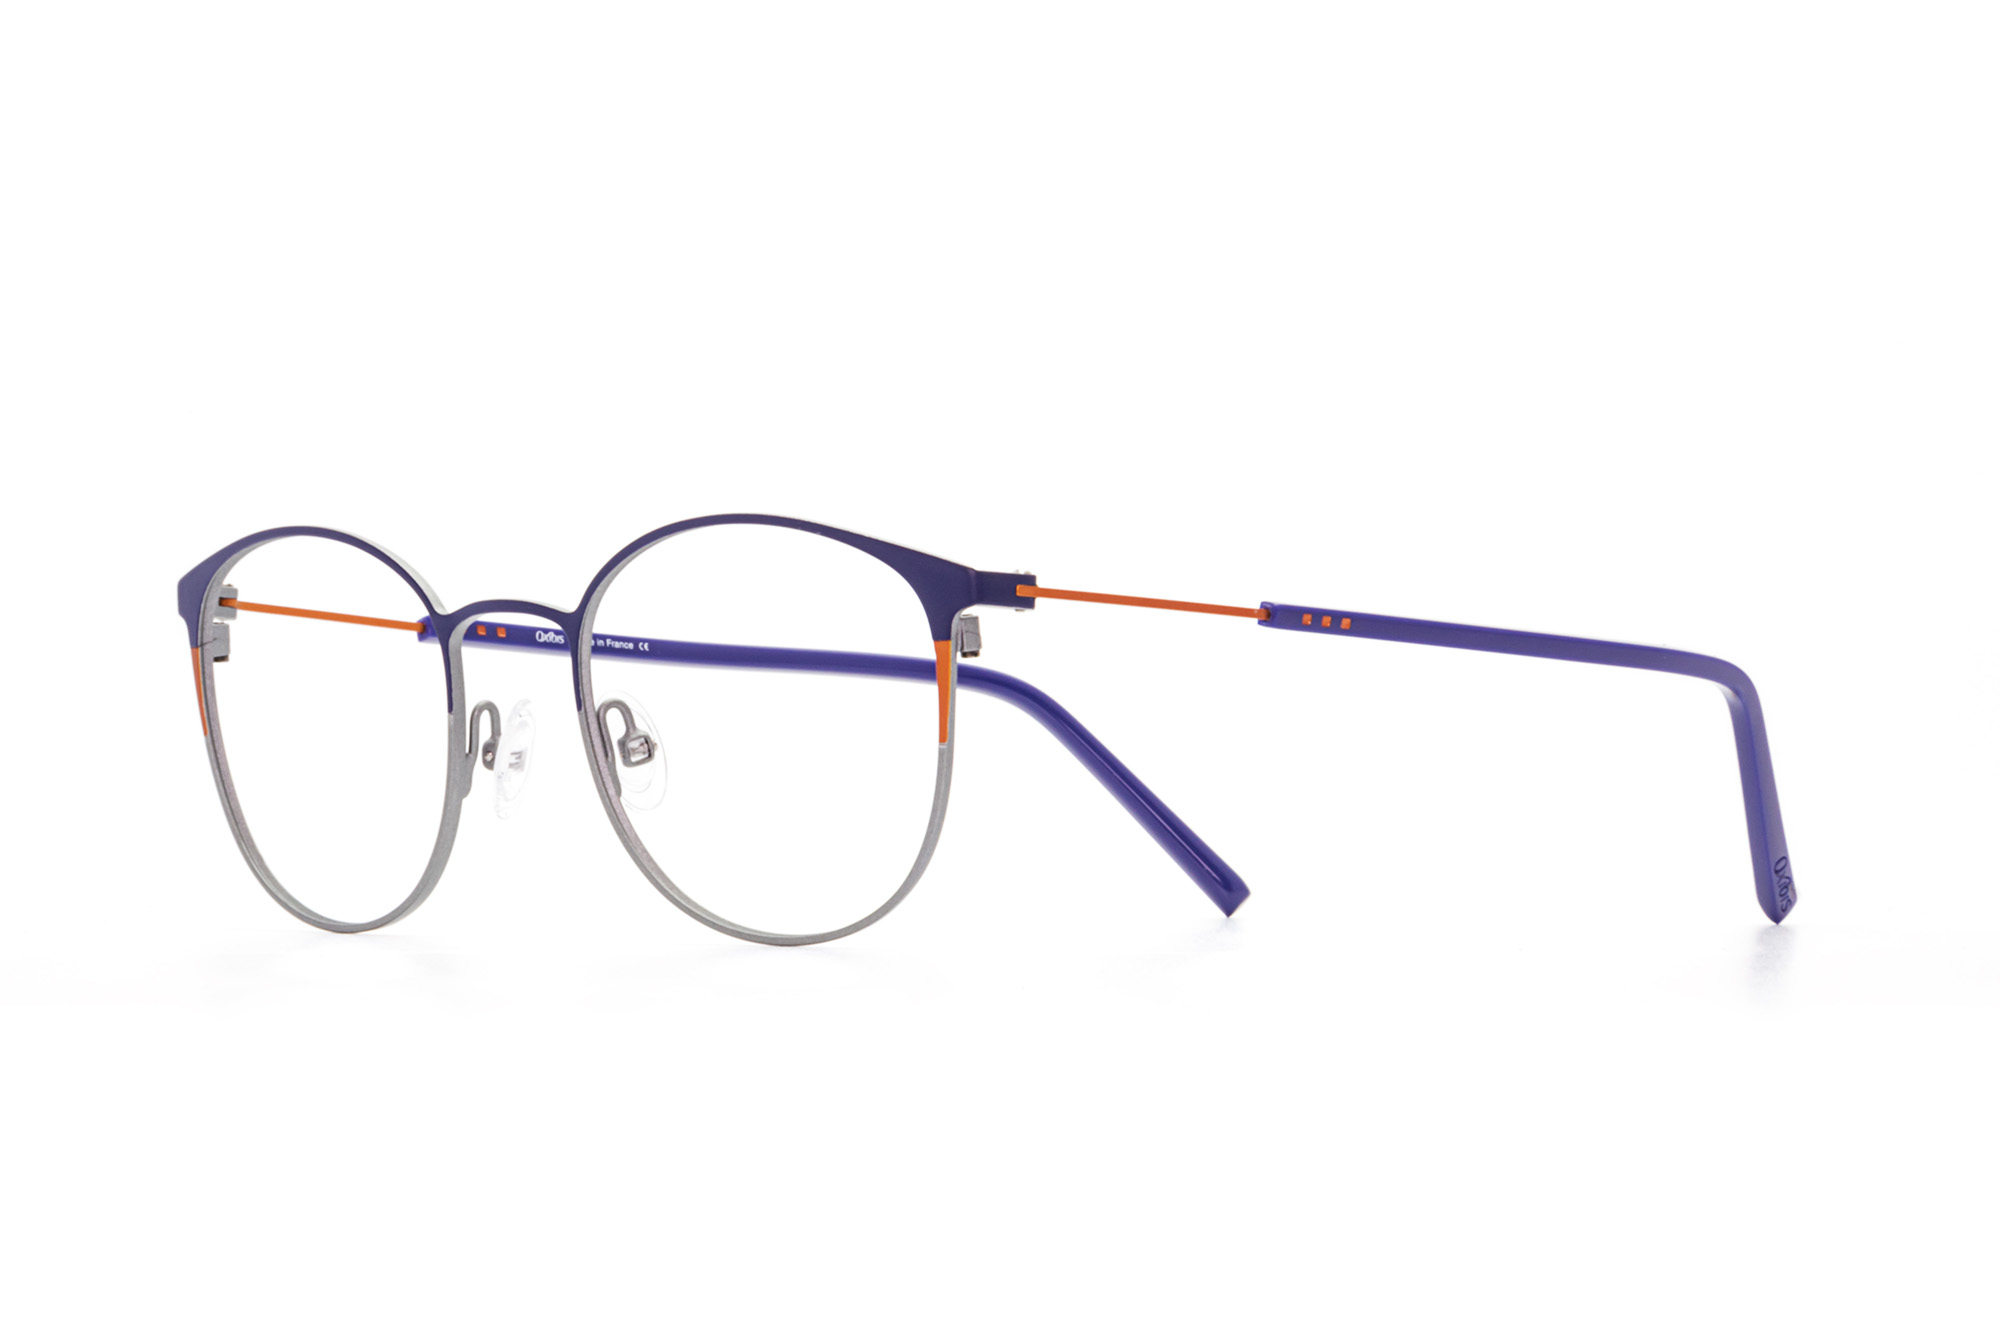 Kullanıma hazır optik tarzda işlenmiş camları ve optik uyumlu çerçevesiyle Oxibis Boost BO1C6 49 küçük ekartman mavi, turuncu ve gri renkli yuvarlak model unisex gözlüğü optisyen veya gözlükçülerin sunacağı numarasız veya numaralı cam özelleştirmeleriyle size en yakın gözlükçüden satın alabilirsiniz.